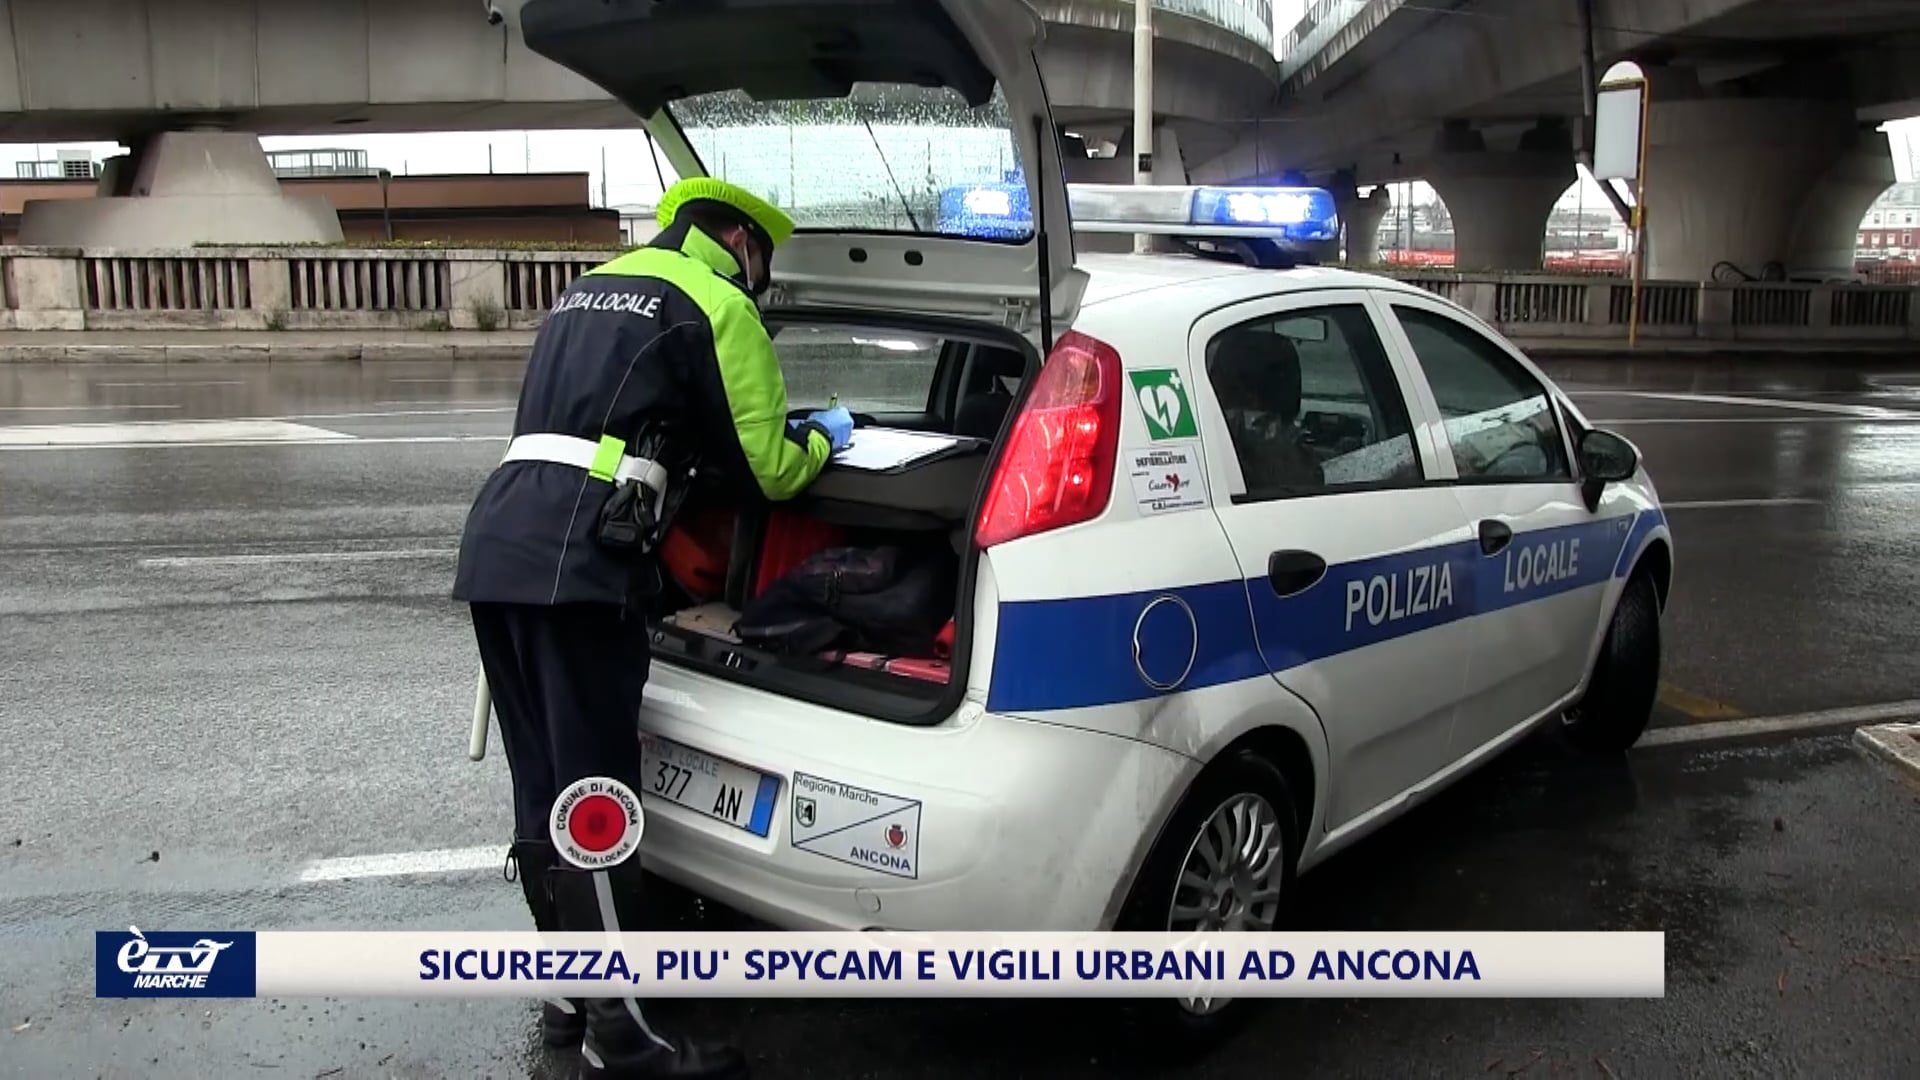 Sicurezza, più spycam e vigili urbani ad Ancona